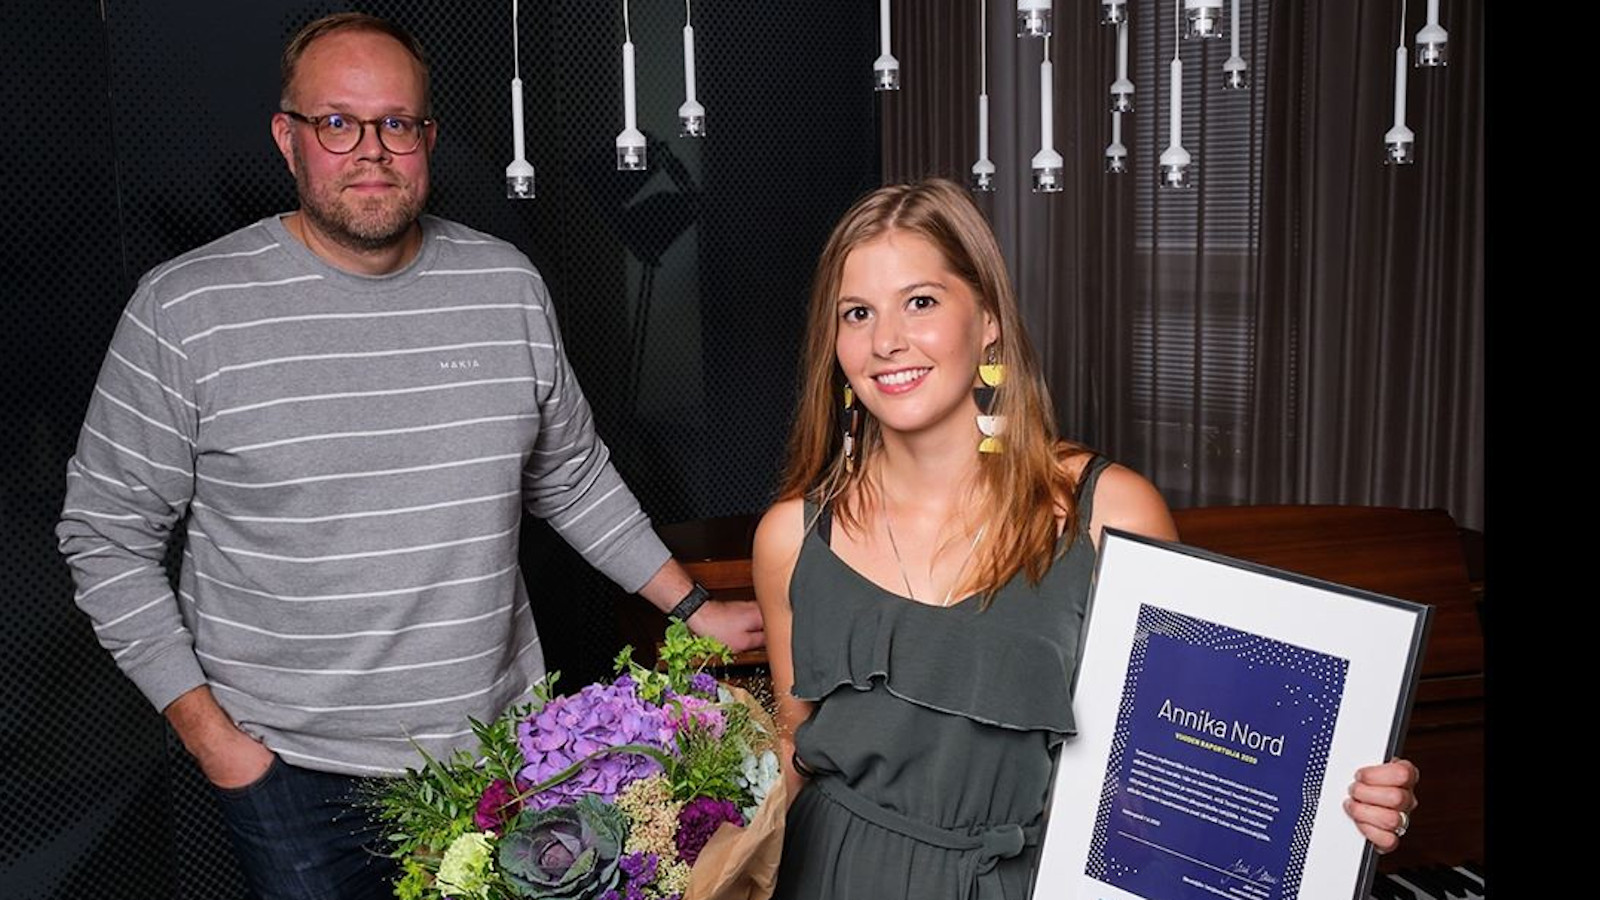 Kuvassa on Annika Nordin kukkasten kanssa ja mieshenkilö, joka jakoi Vuoden raportoija -palkinnon.